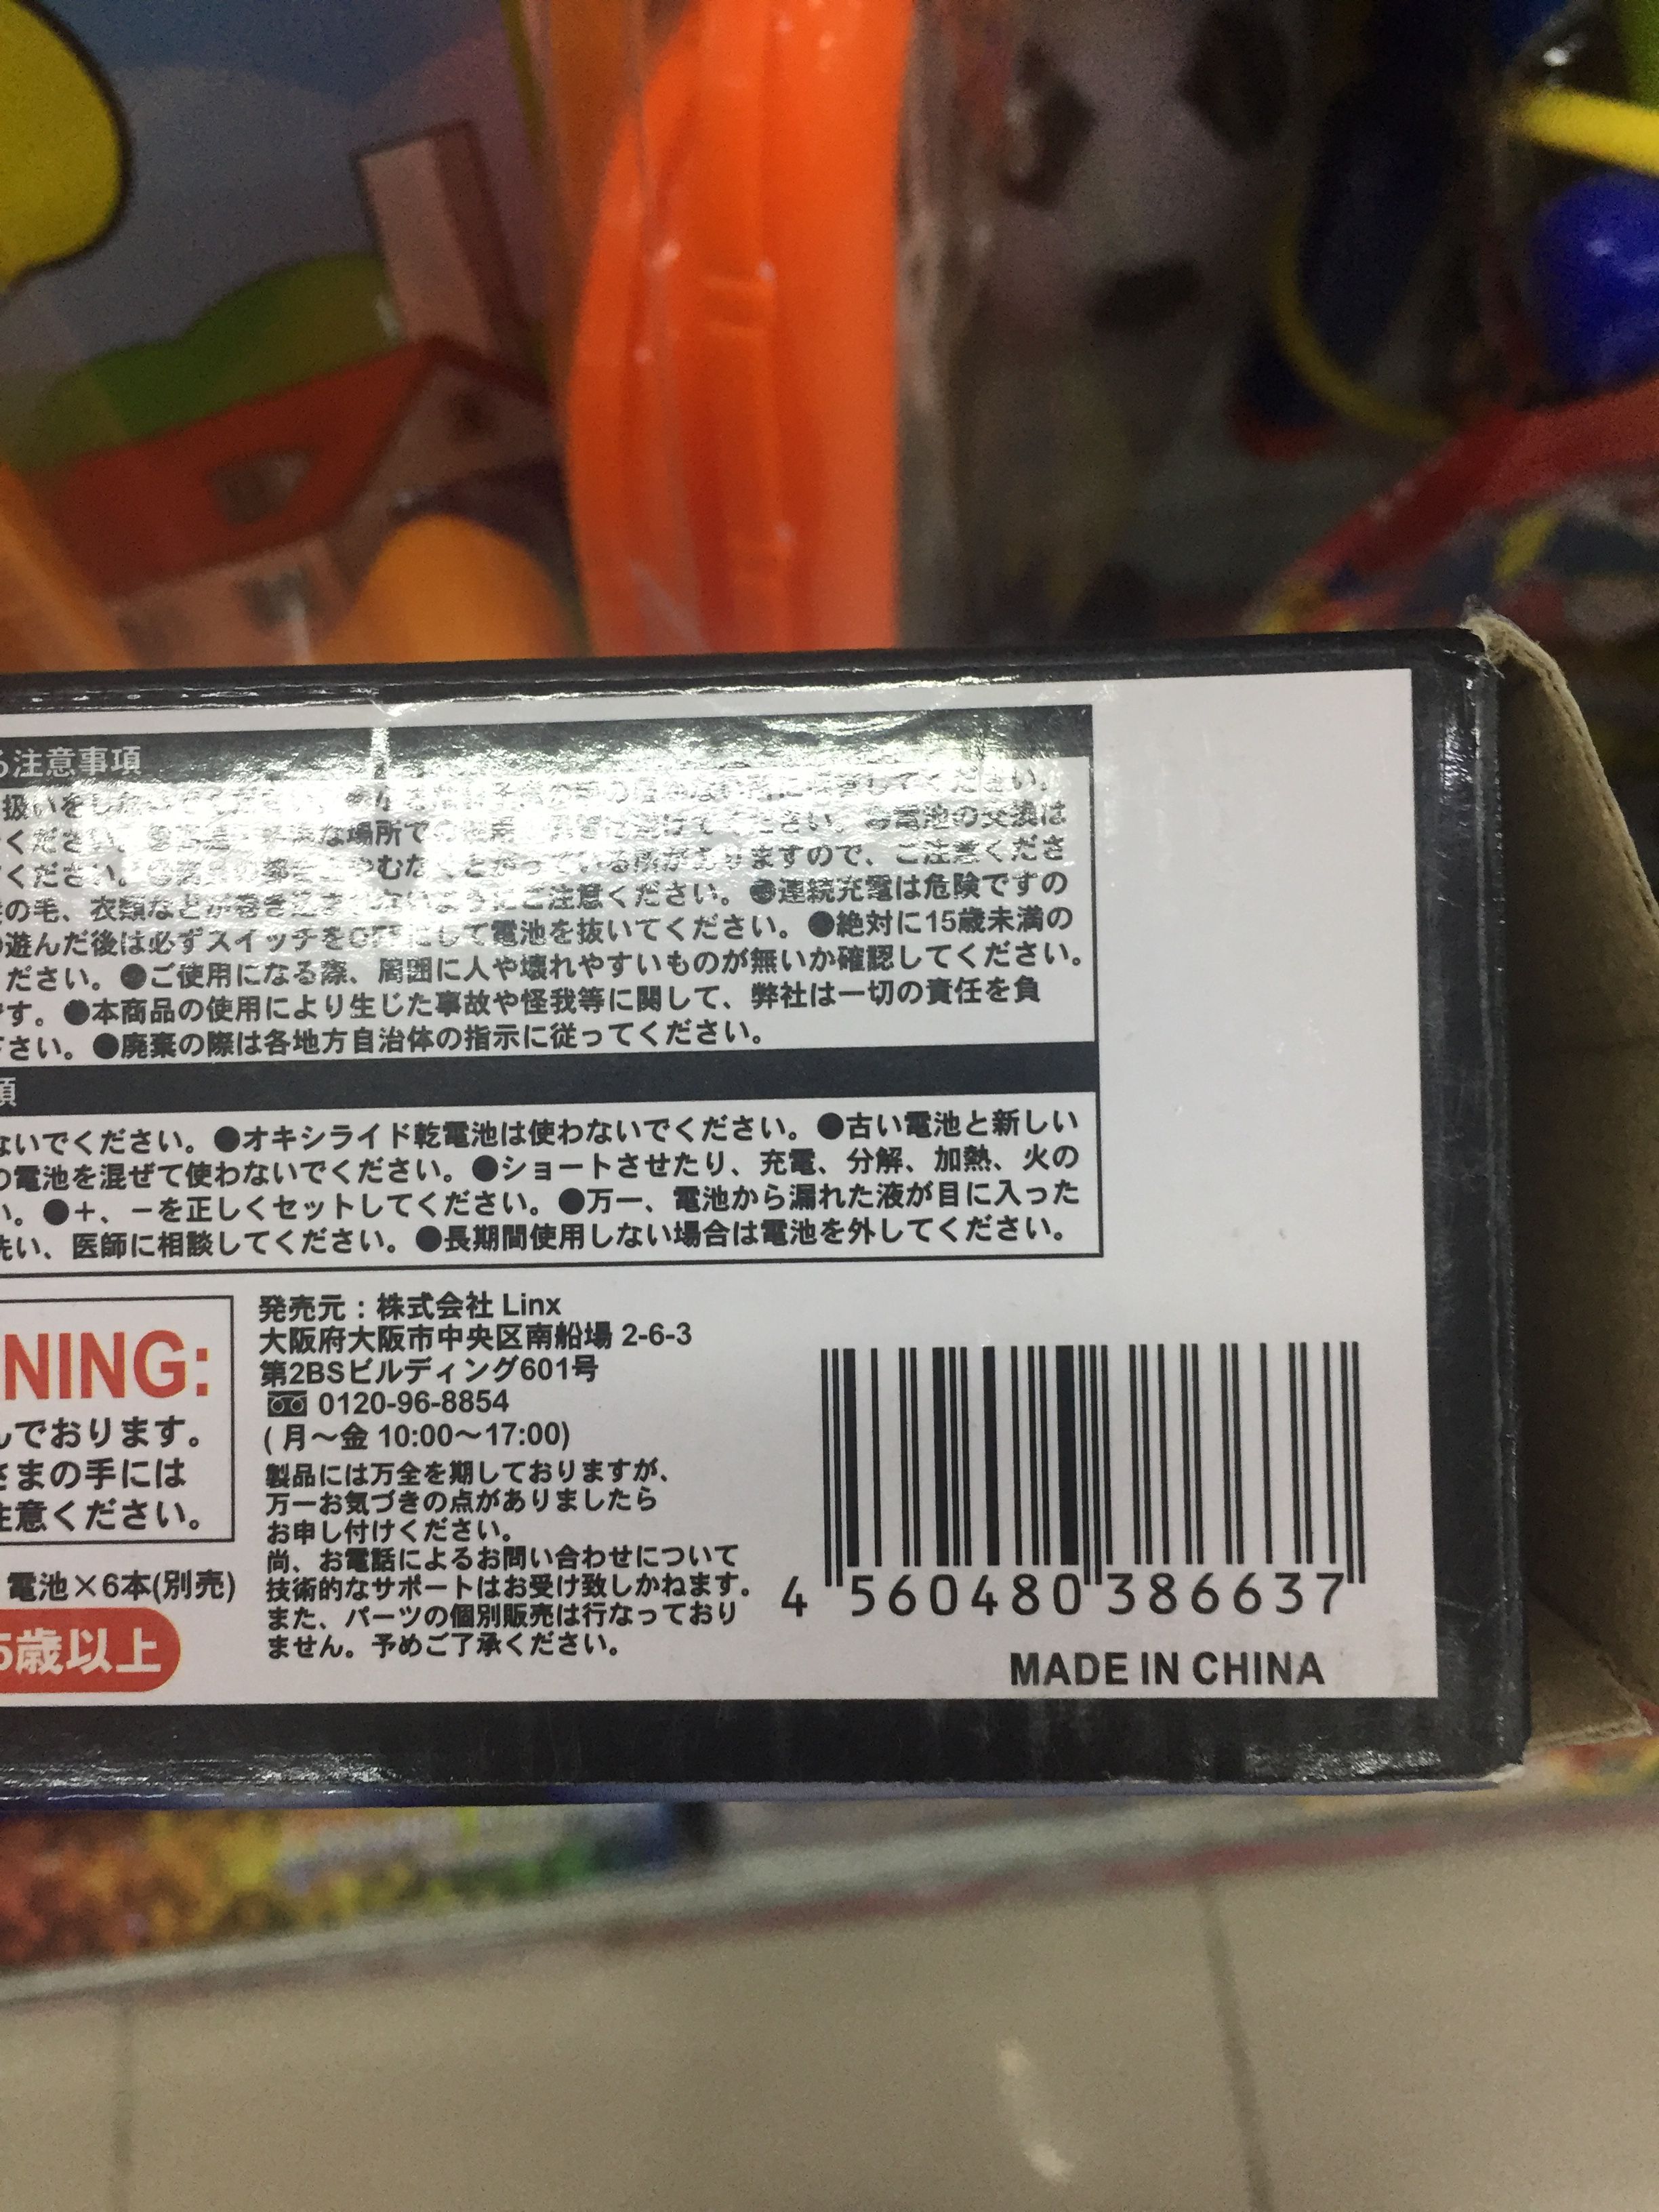 Sản phẩm Made in China được bày bán tại Sakuko.